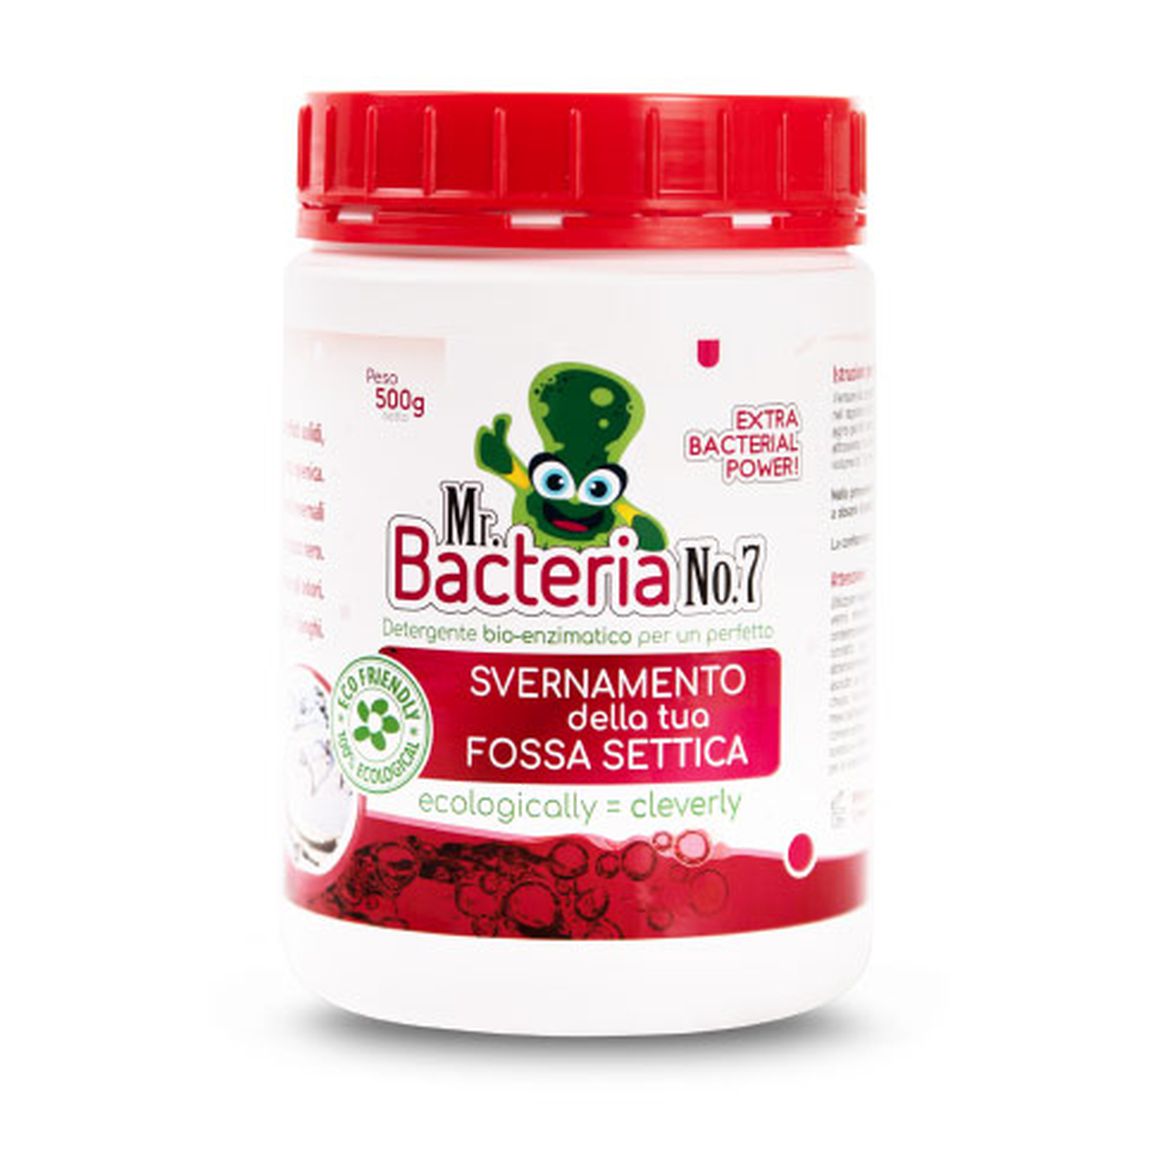 Detergente bio-enzimatico per un perfetto SVERNAMENTO della tua FOSSA SETTICA 500g (Batteri per fossa biologica)